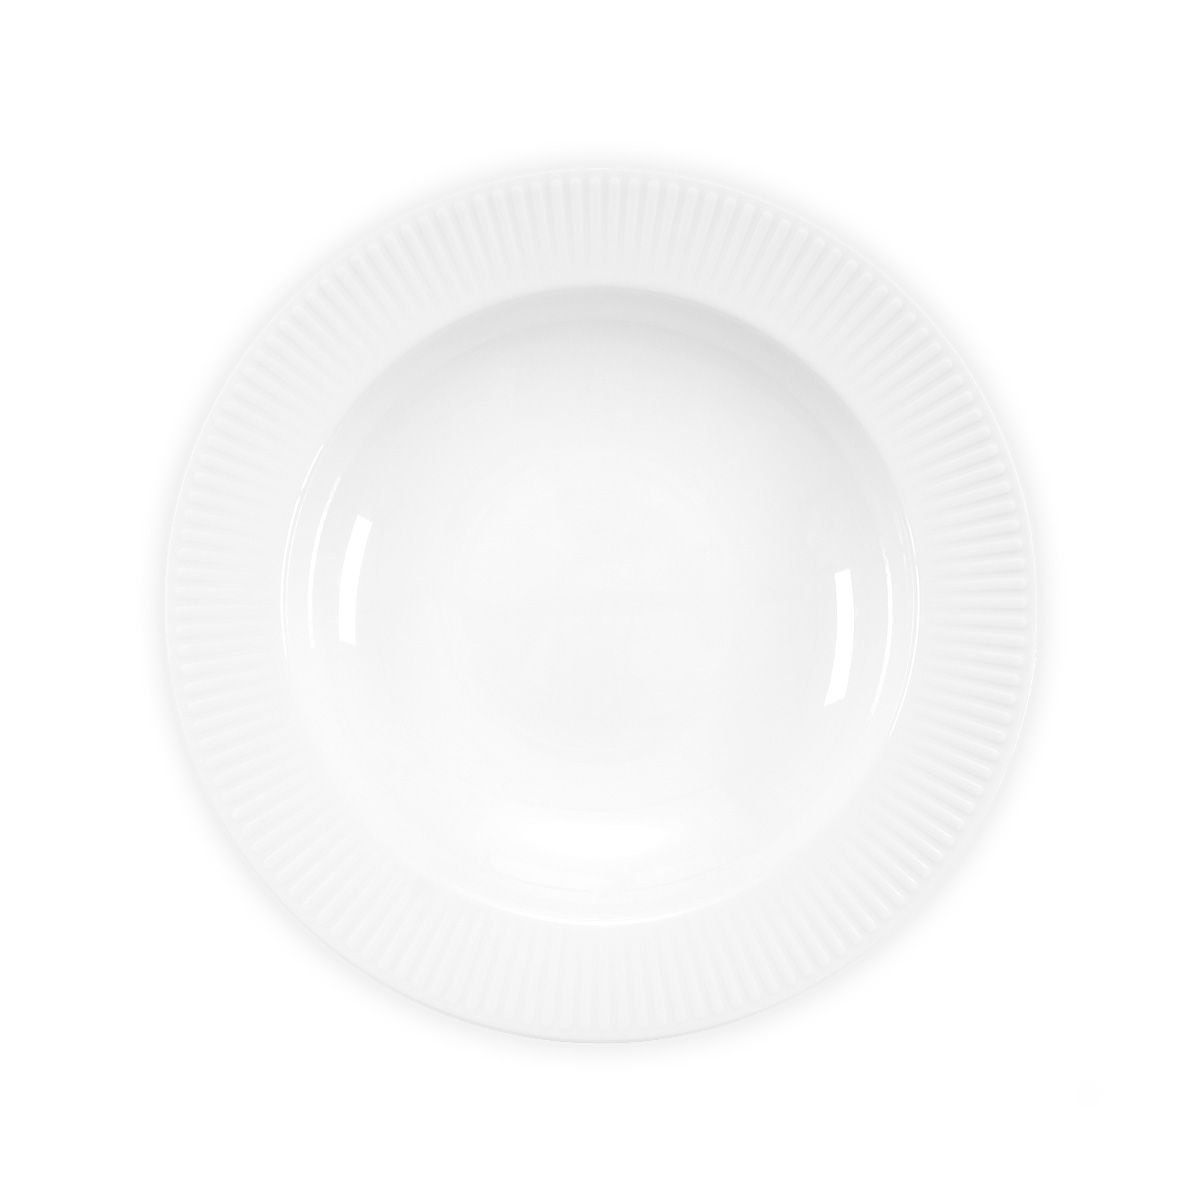 Bodum Douro Pasta Plate Porcelaine Blanc, 4 PCS.